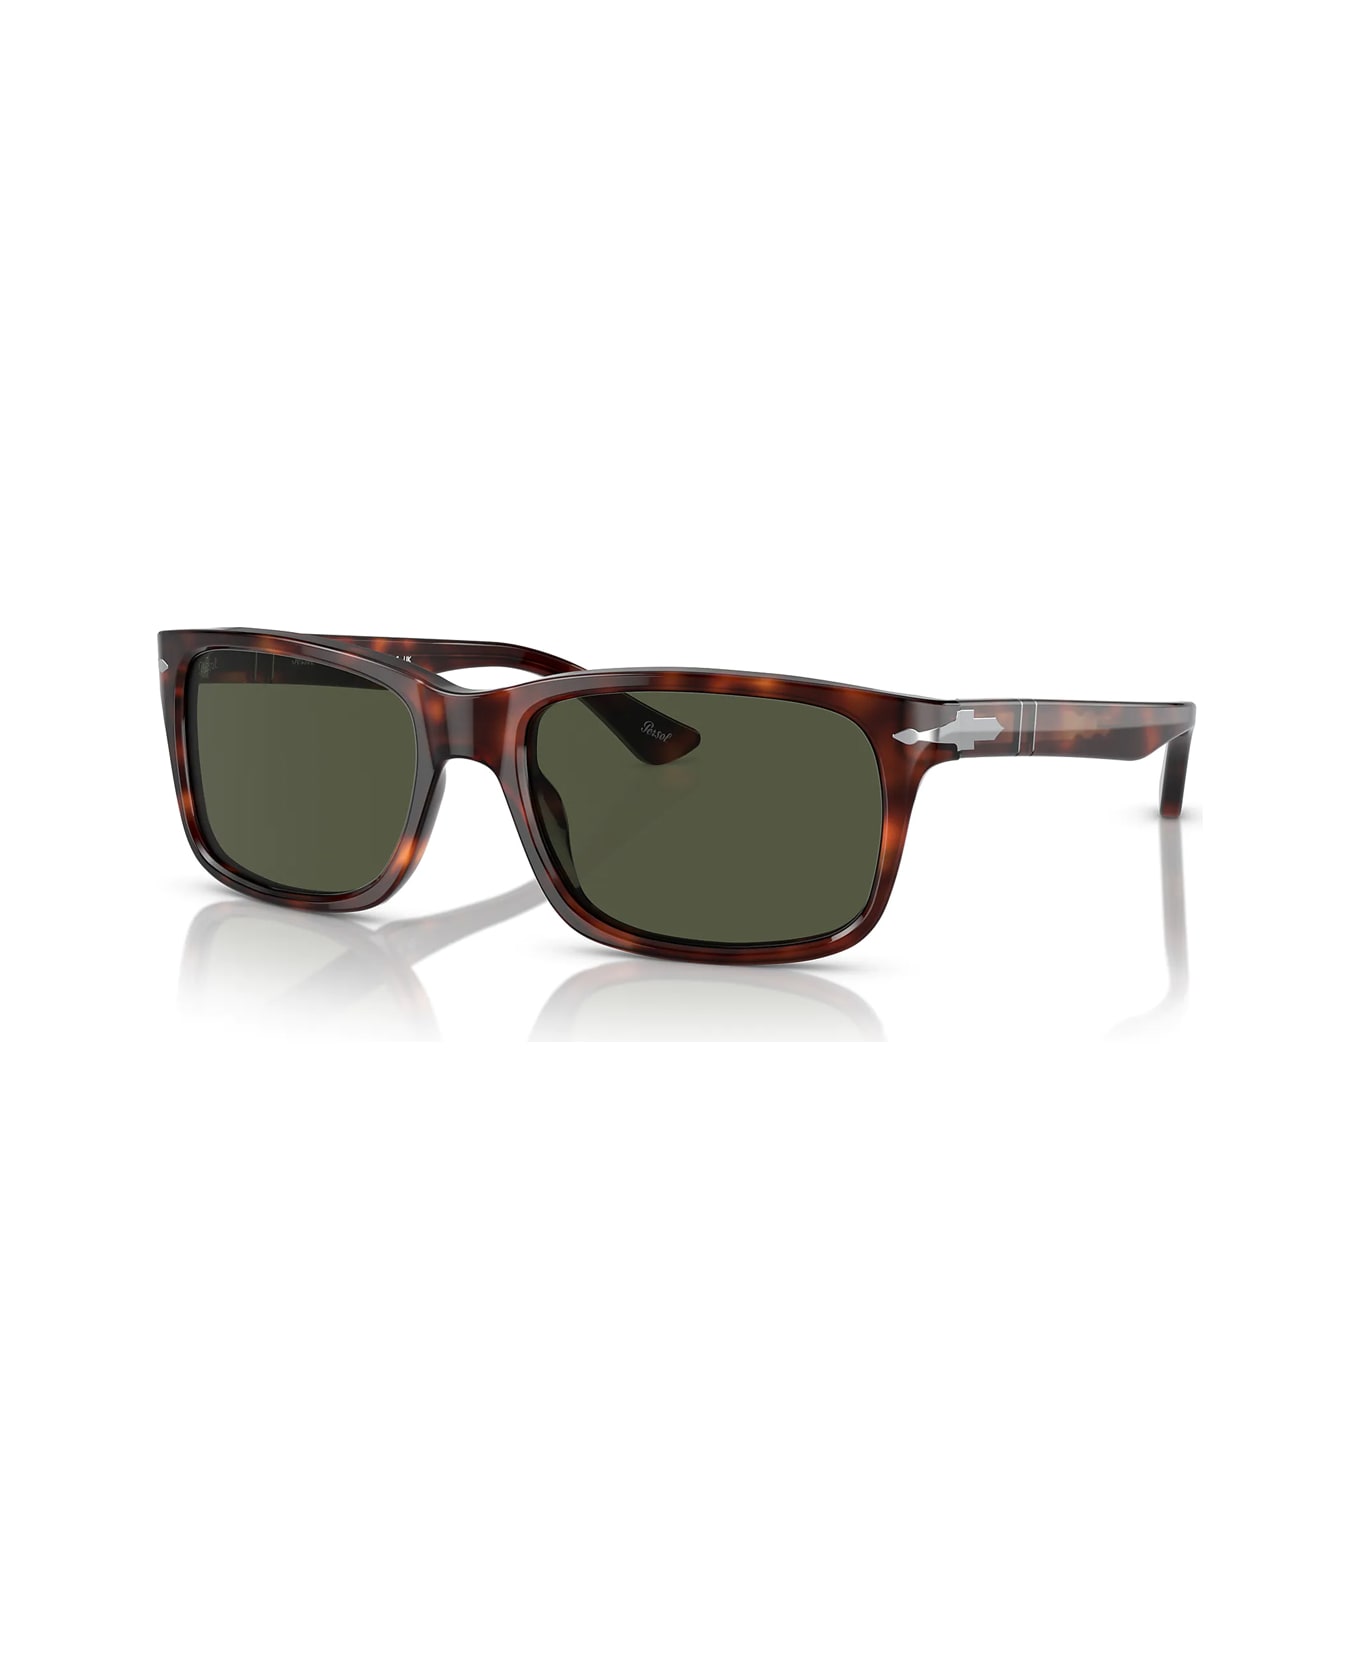 Persol Po3048s 24/31 Sunglasses - Marrone サングラス